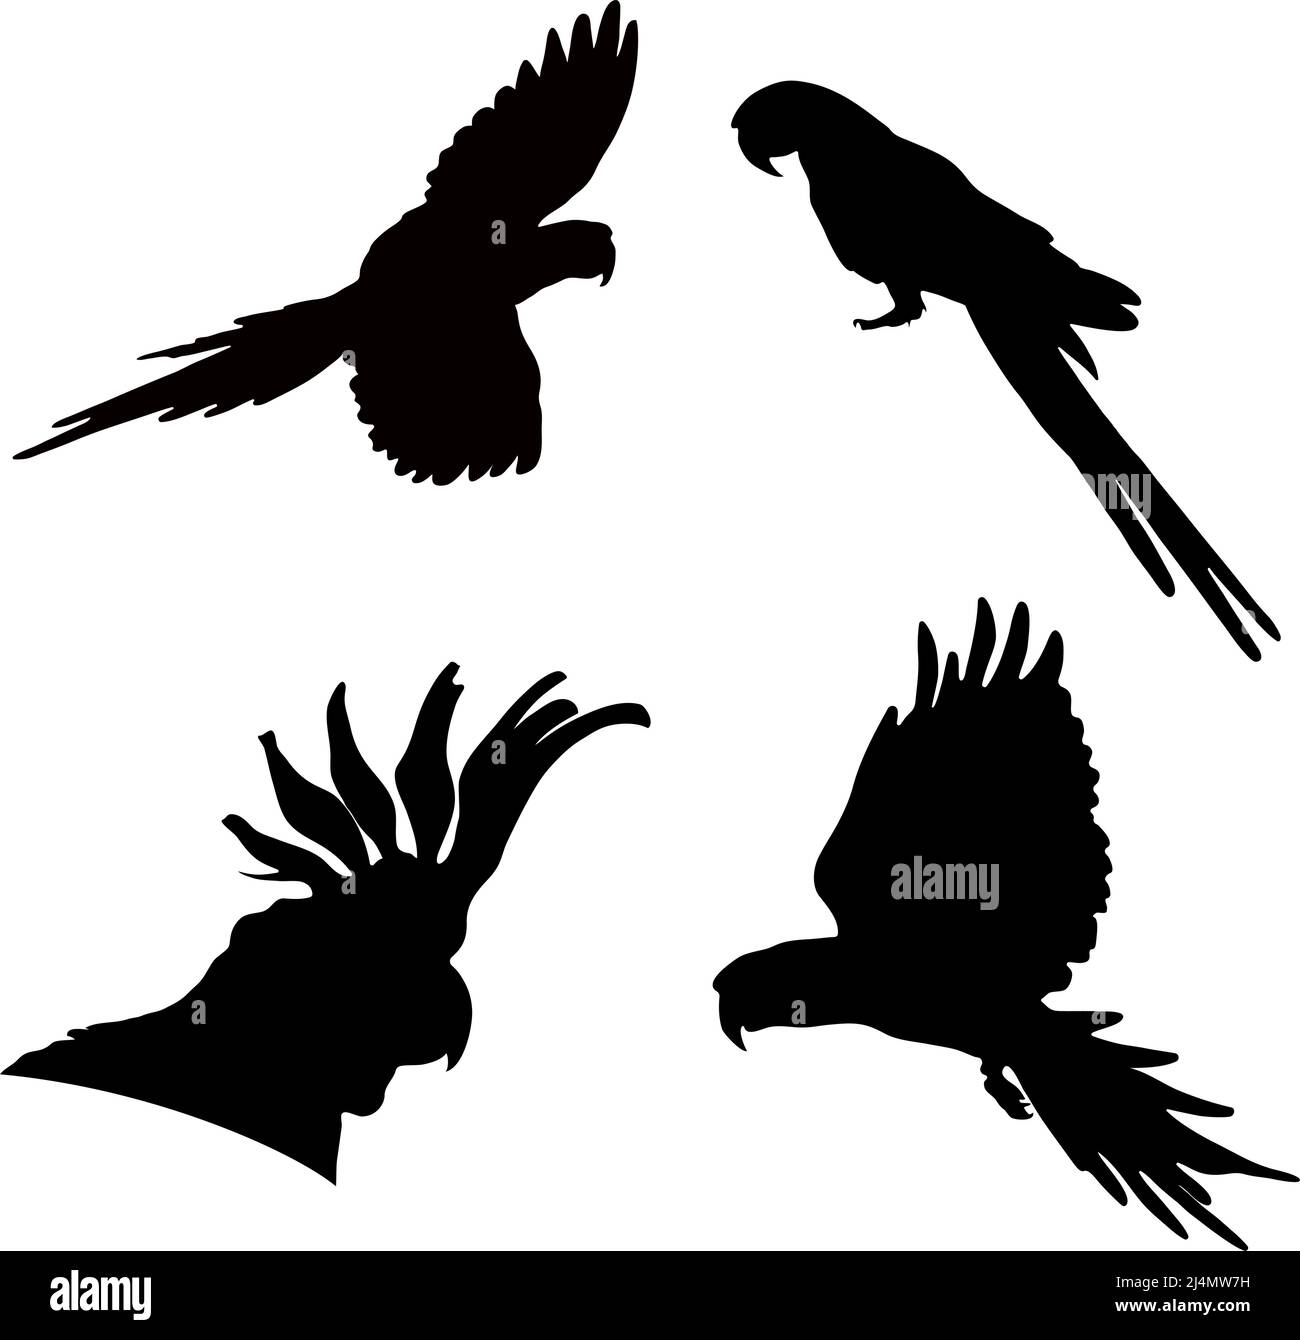 Silhouette nere di pappagalli su sfondo bianco. Immagine vettoriale. Illustrazione Vettoriale